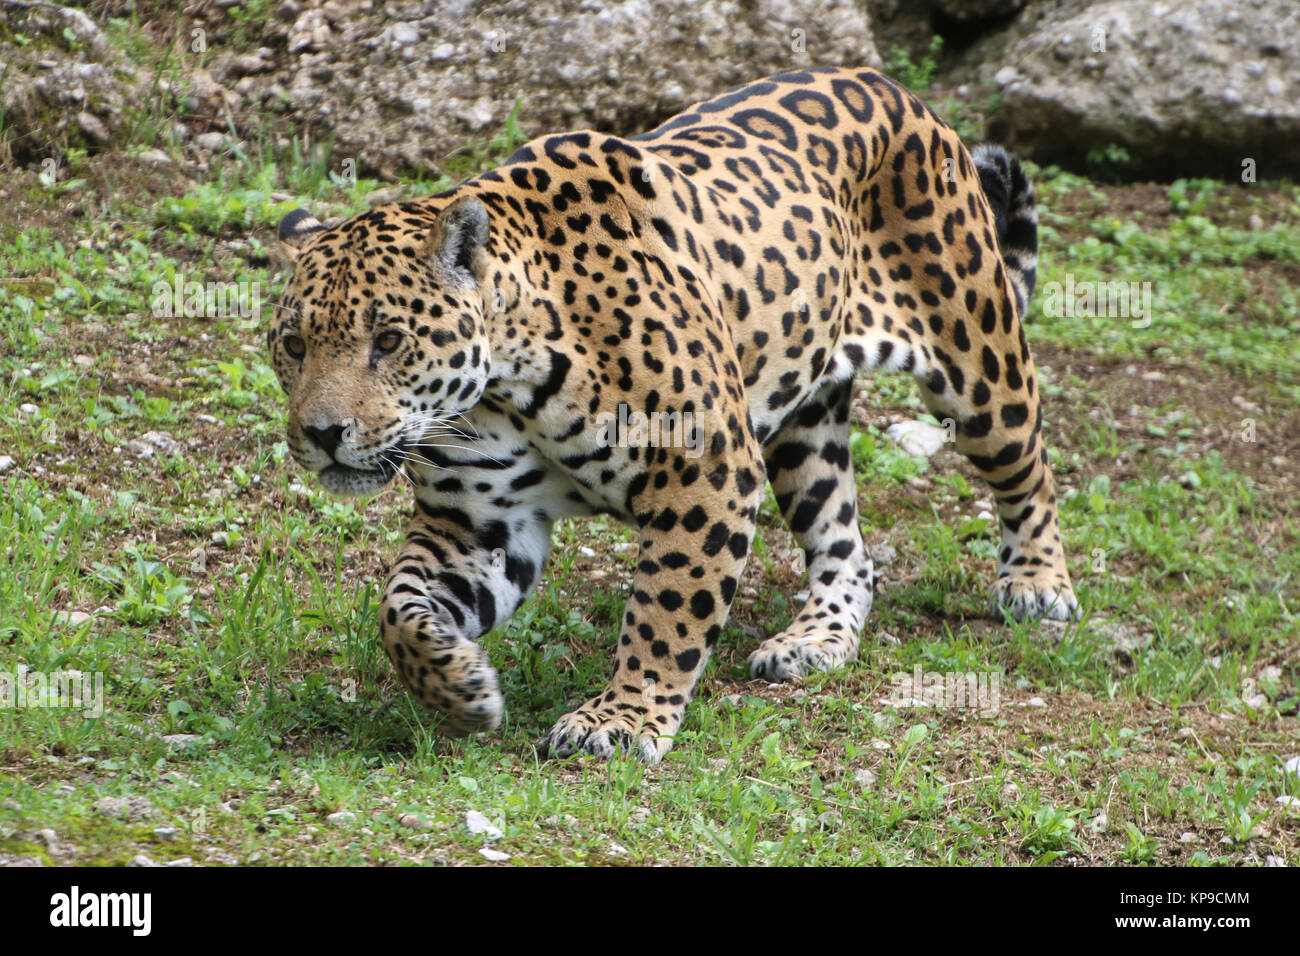 Jaguar schleicht sich an Beute ran Stock Photo